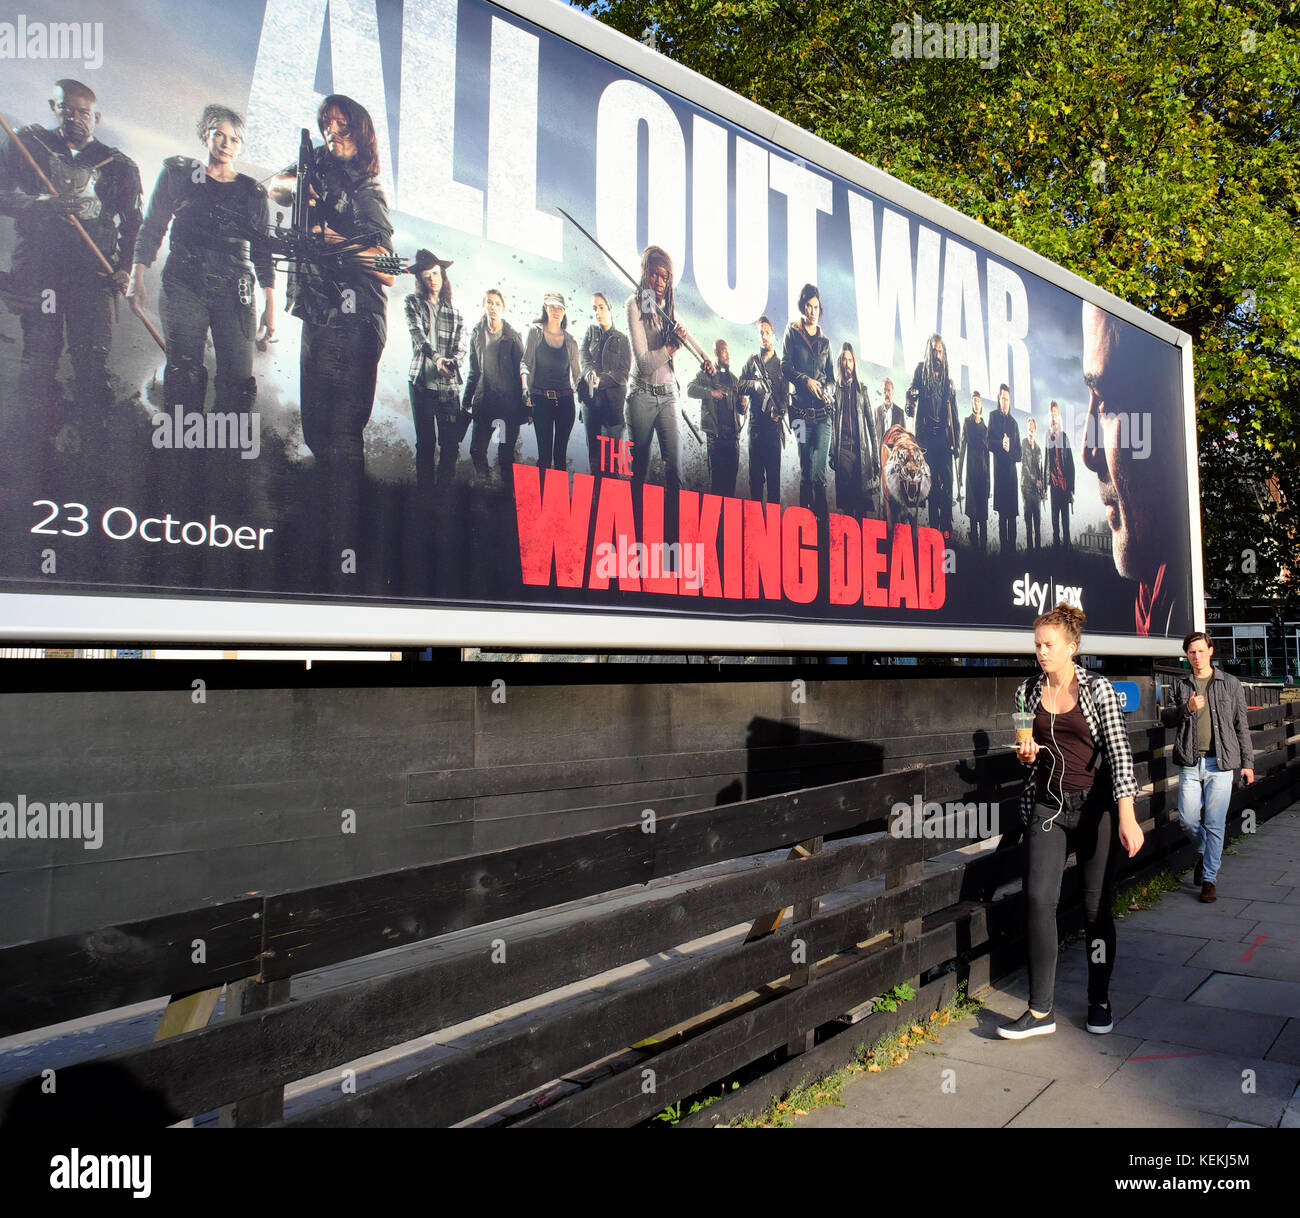 people walking past The Walking Dead billboard in London, England Stock Photo